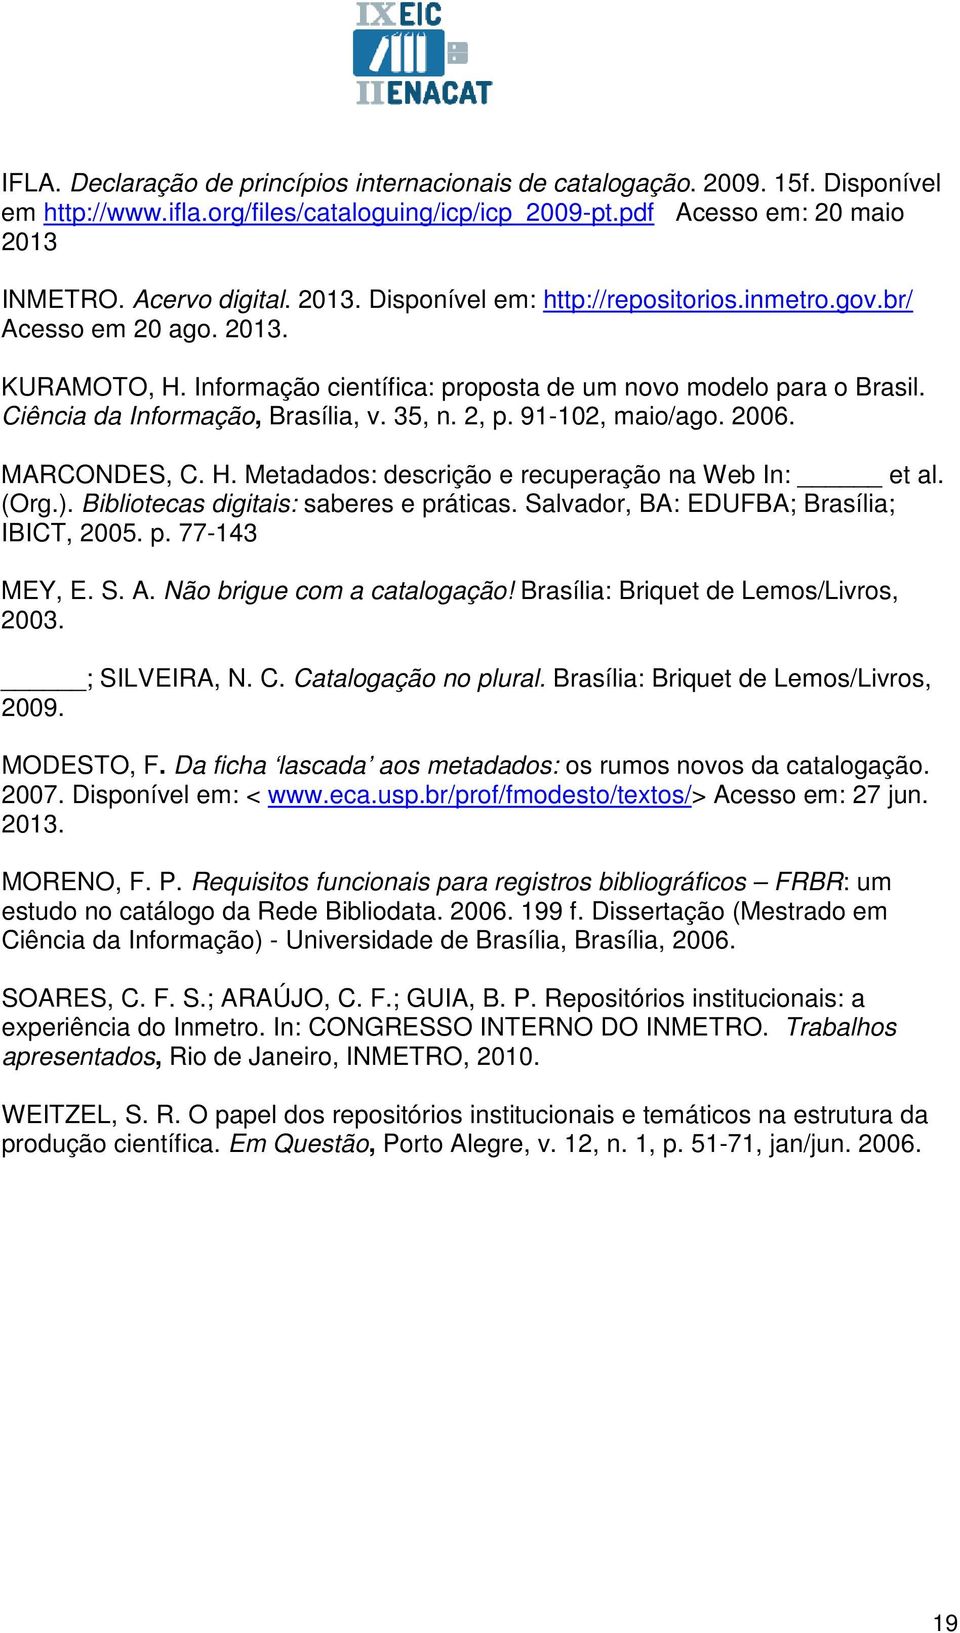 Ciência da Informação, Brasília, v. 35, n. 2, p. 91-102, maio/ago. 2006. MARCONDES, C. H. Metadados: descrição e recuperação na Web In: et al. (Org.). Bibliotecas digitais: saberes e práticas.